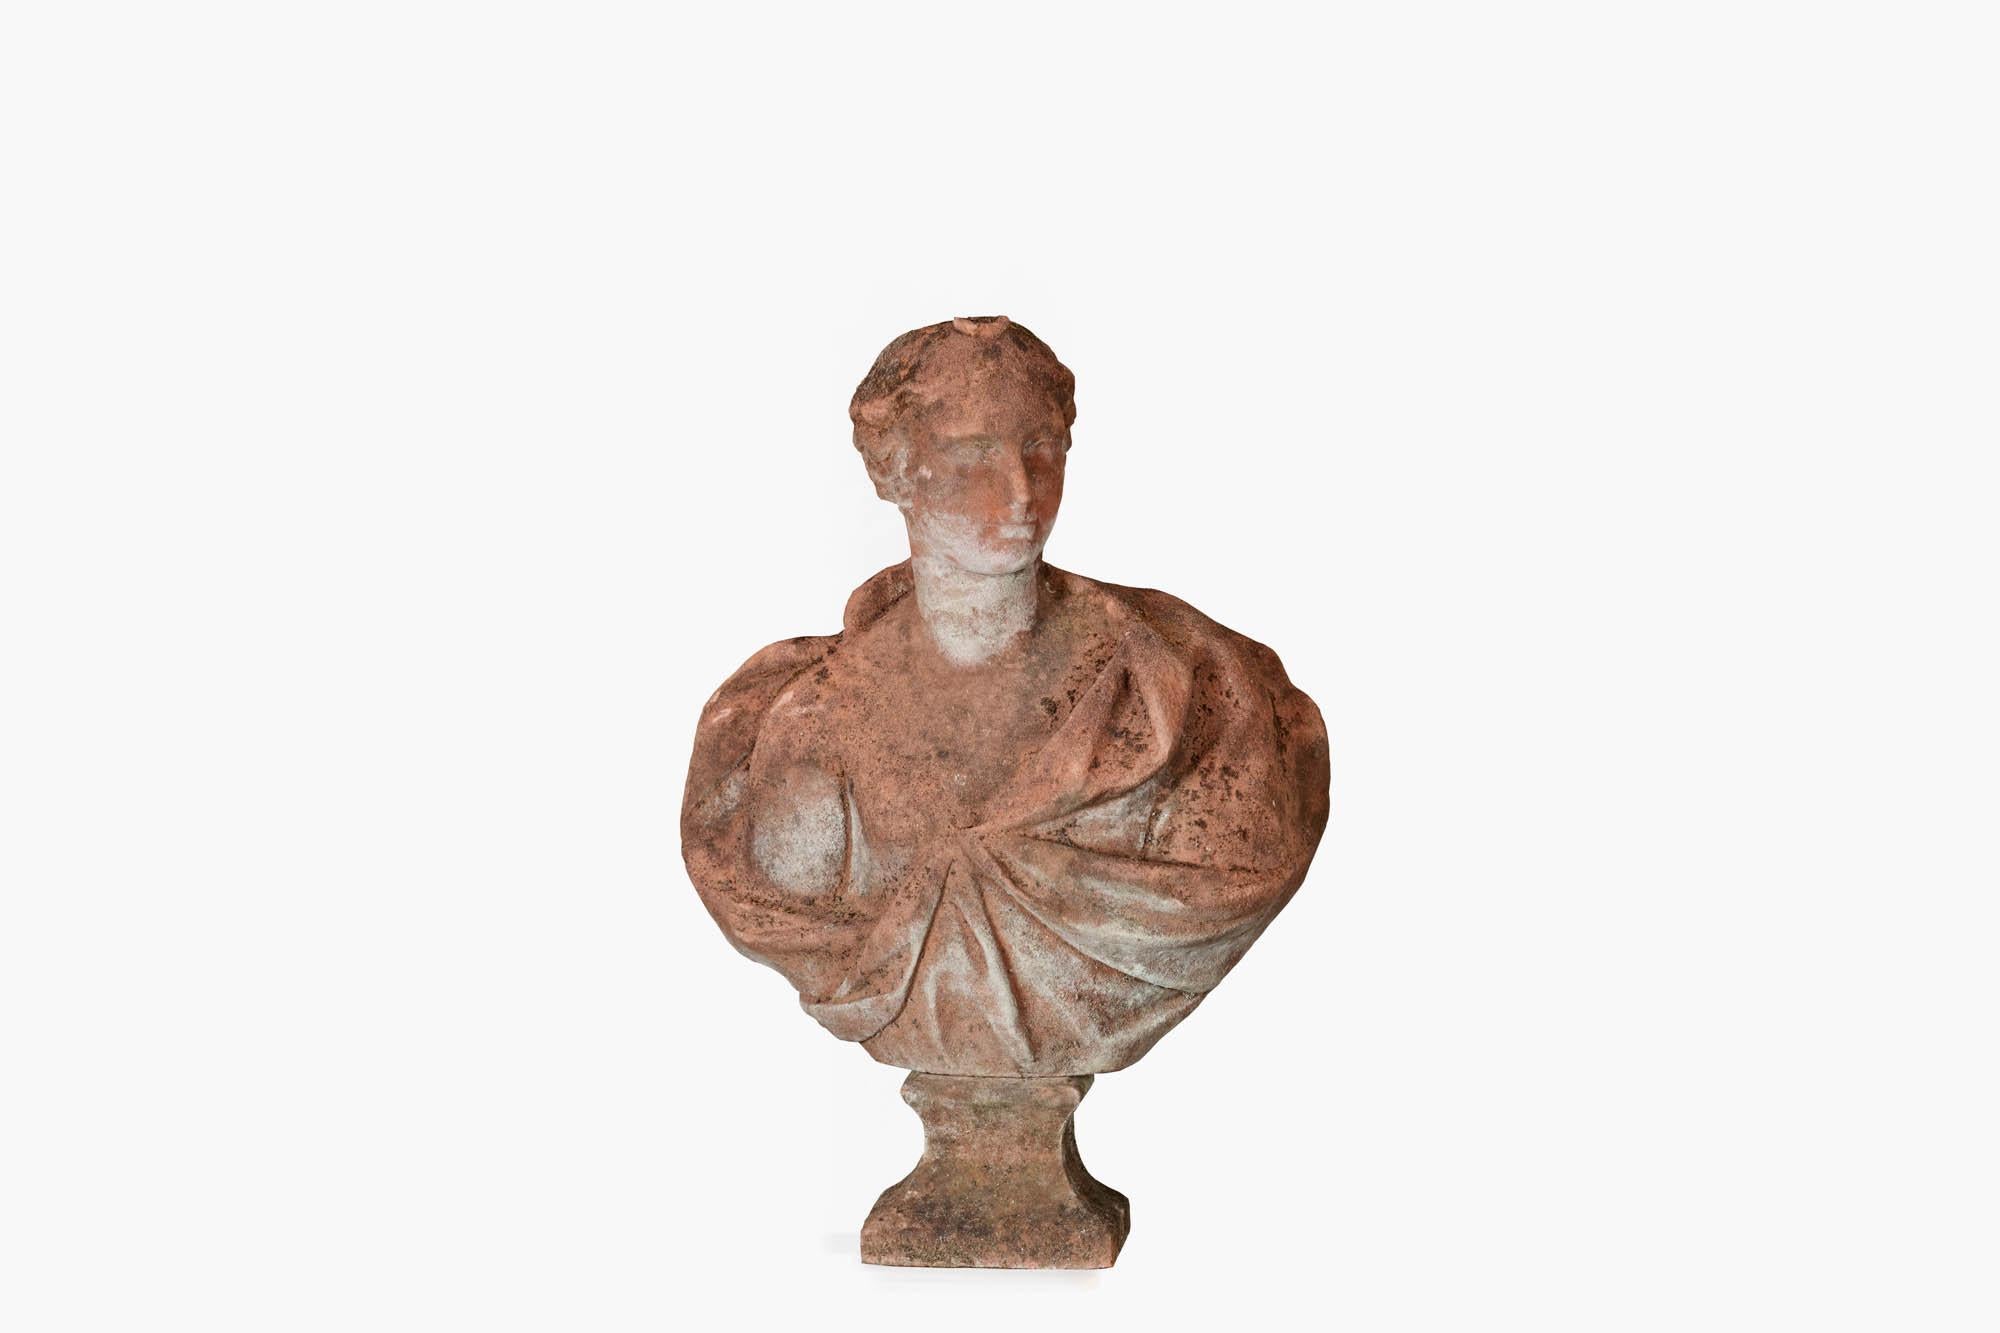 Buste en grès sculpté à la main de style néo-classique de la fin du XVIIIe siècle représentant une dame en tenue classique gréco-romaine. Peut-être une représentation de Daphné, qui était une nymphe naïade dans la mythologie grecque. Les naïades